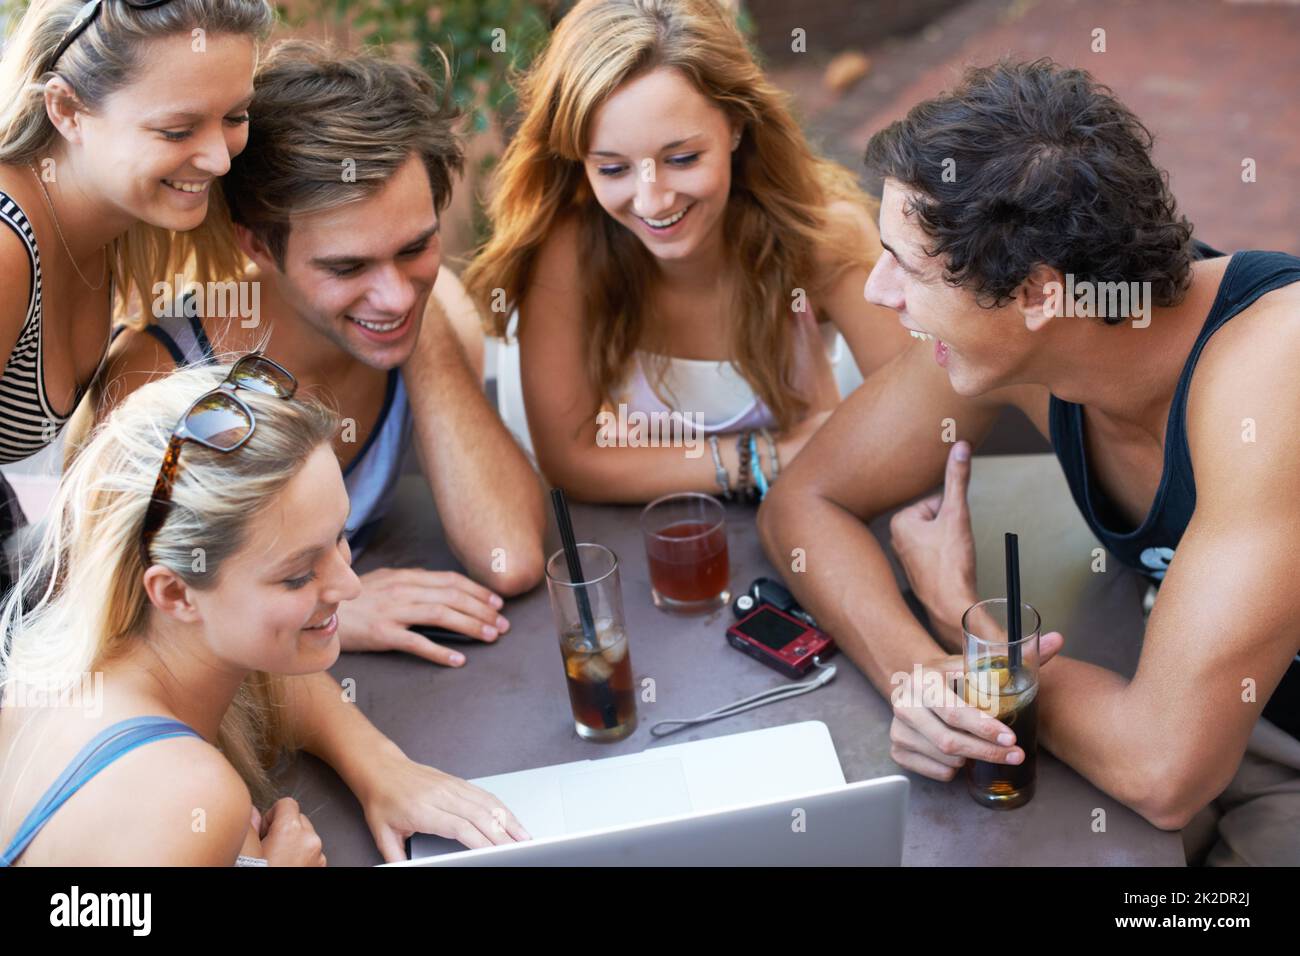 Schau dir das an. Eine Gruppe von Teenagern genießt Getränke in einem Restaurant im Freien mit all ihrer modernen Technologie. Stockfoto